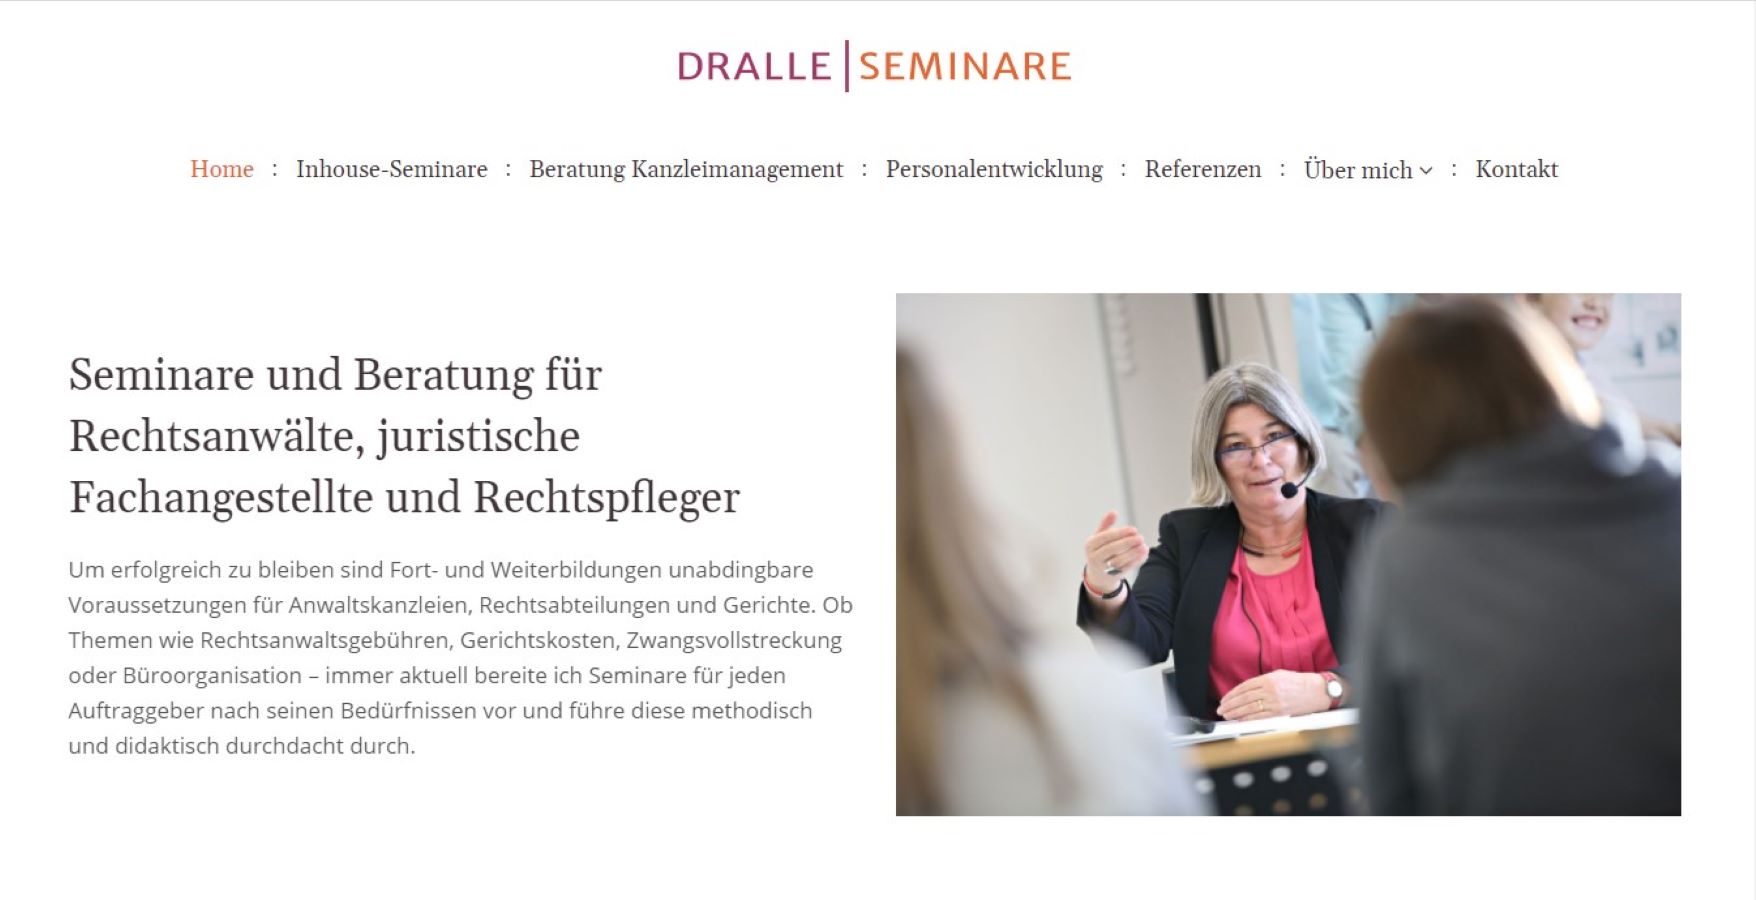 SEO-Texte und Websitepflege für Dralle Seminare